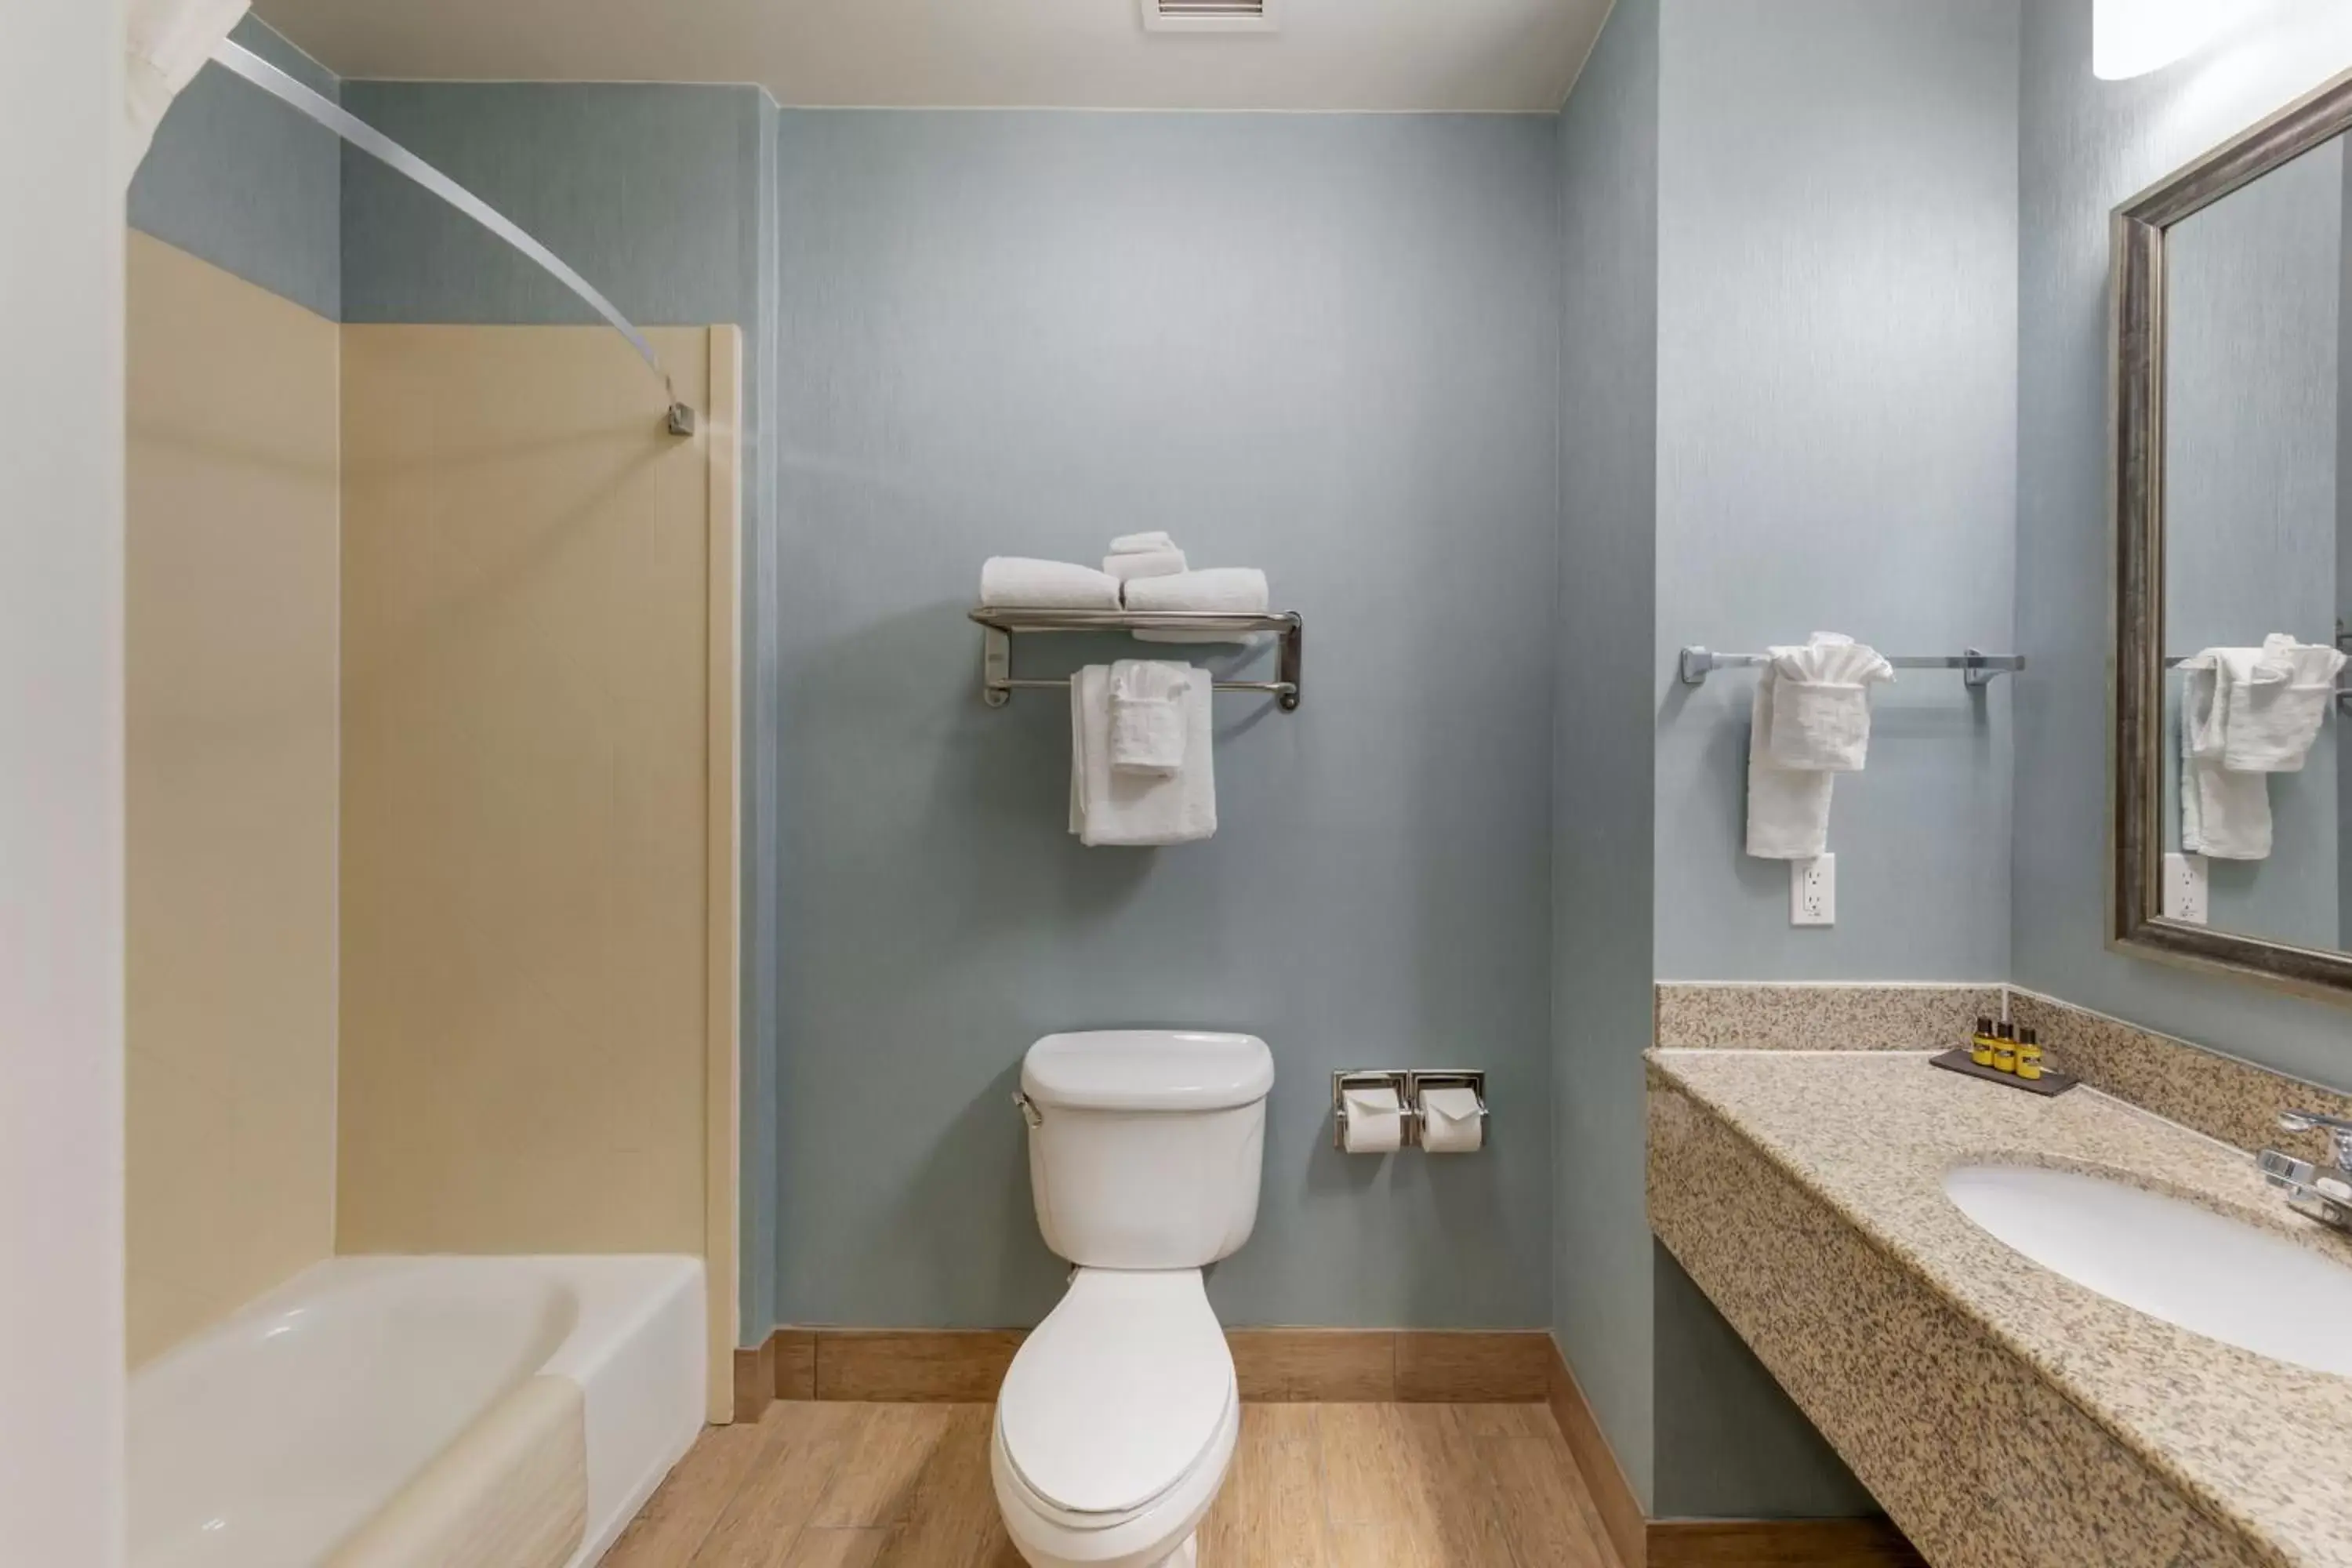 Property building, Bathroom in Best Western Plus Wasco Inn & Suites